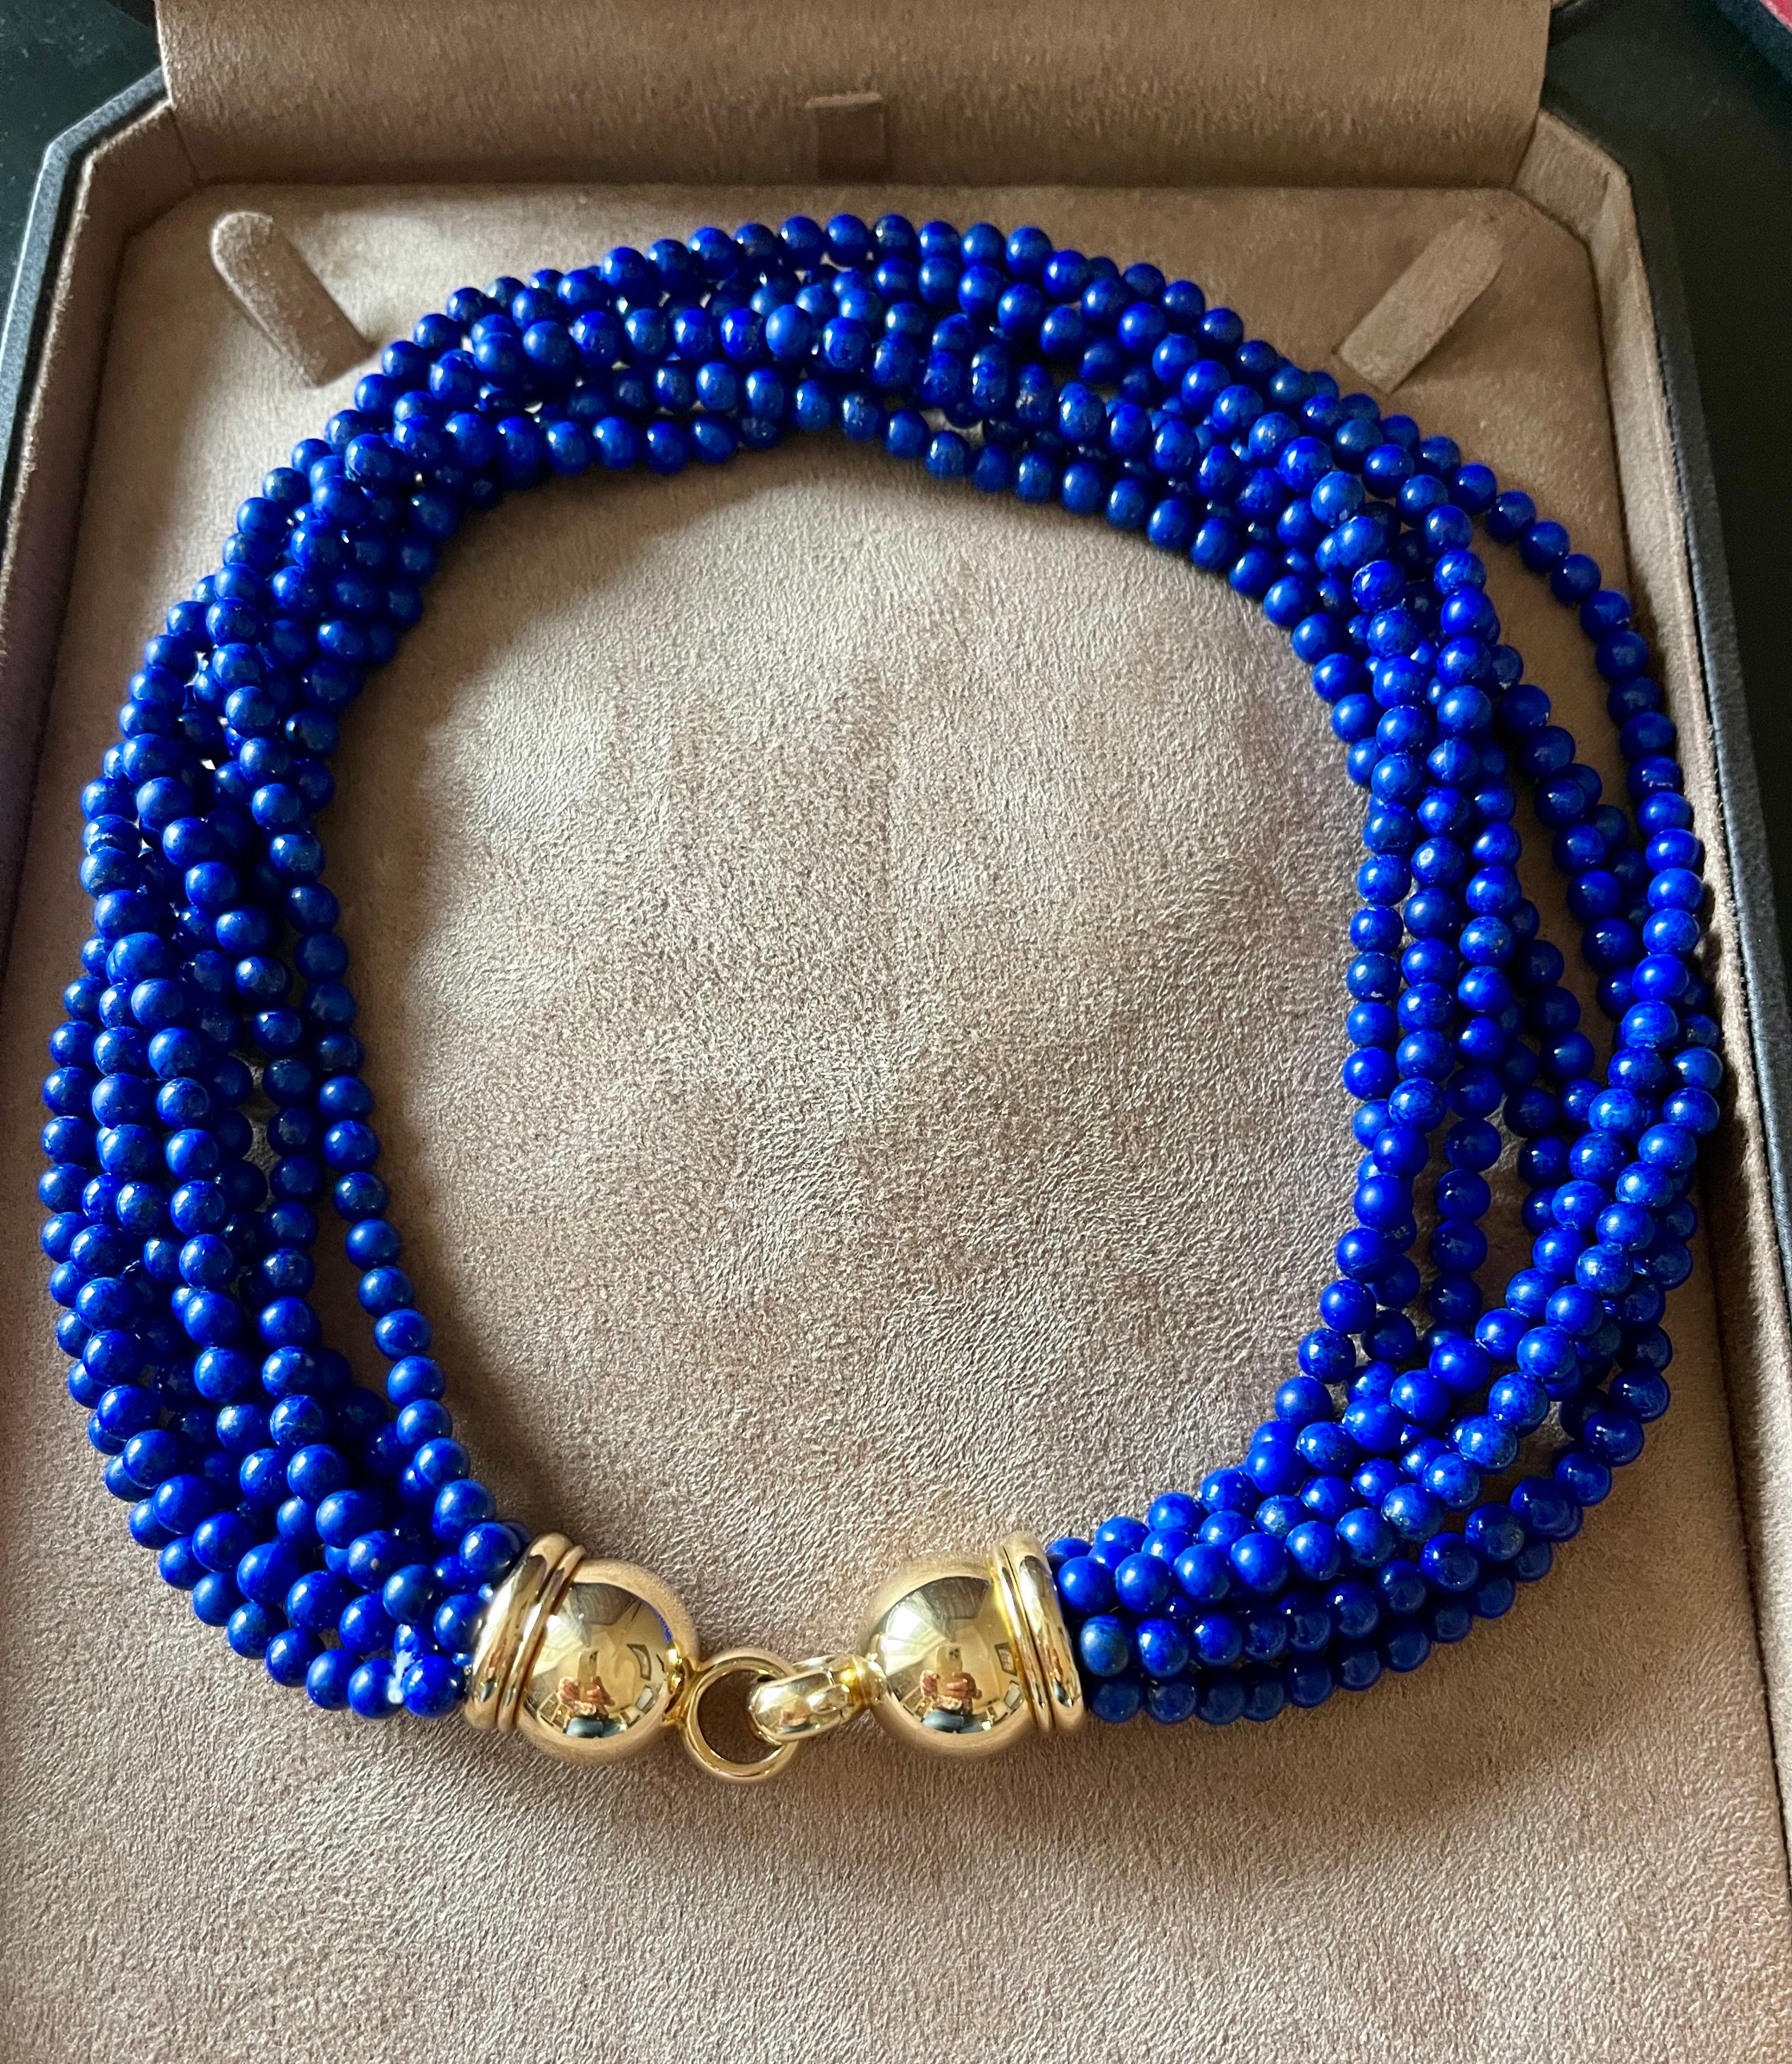 Séduisante et intemporelle torsade en or jaune 18 K composée de 8 rangs de perles de Lapis Lazuli. Les perles mesurent environ 0,5 mm de diamètre. 0,5 mm de diamètre. Signé Péclard Zurich. 
La longueur sans torsion est de 44 cm. 
QUESTIONS ? 